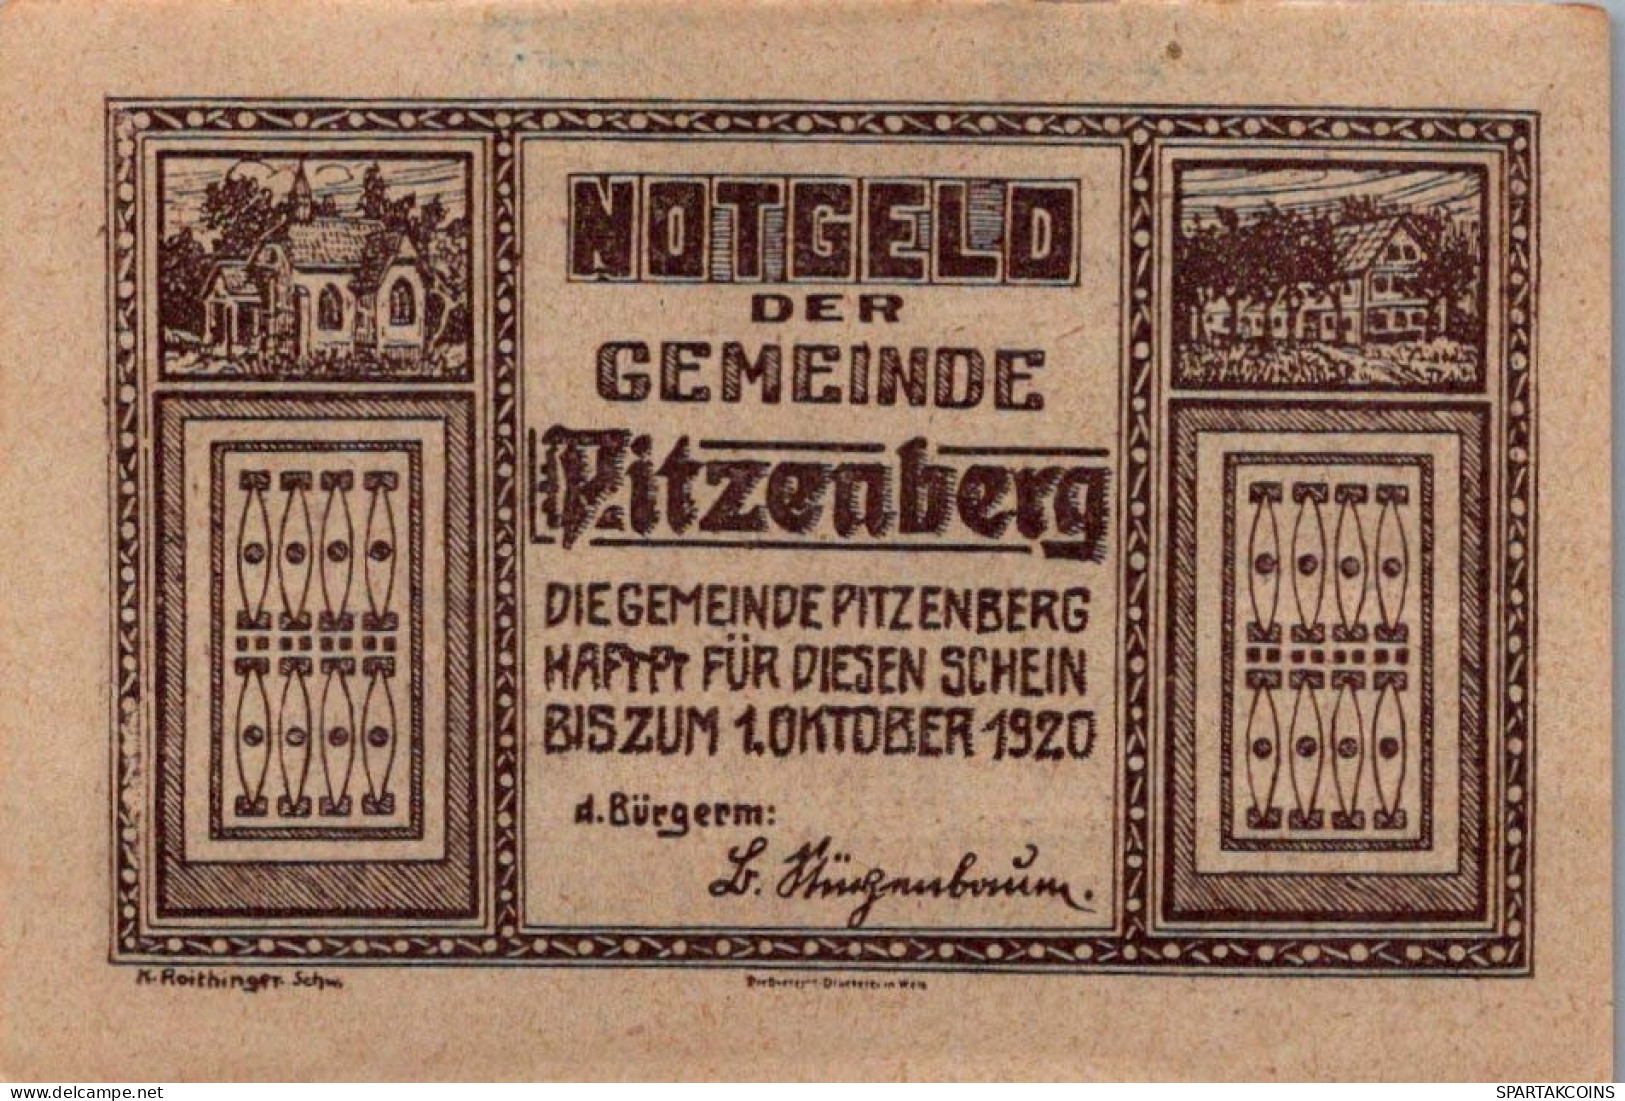 50 HELLER 1920 Stadt PITZENBERG Oberösterreich Österreich Notgeld Papiergeld Banknote #PG622 - [11] Emissioni Locali